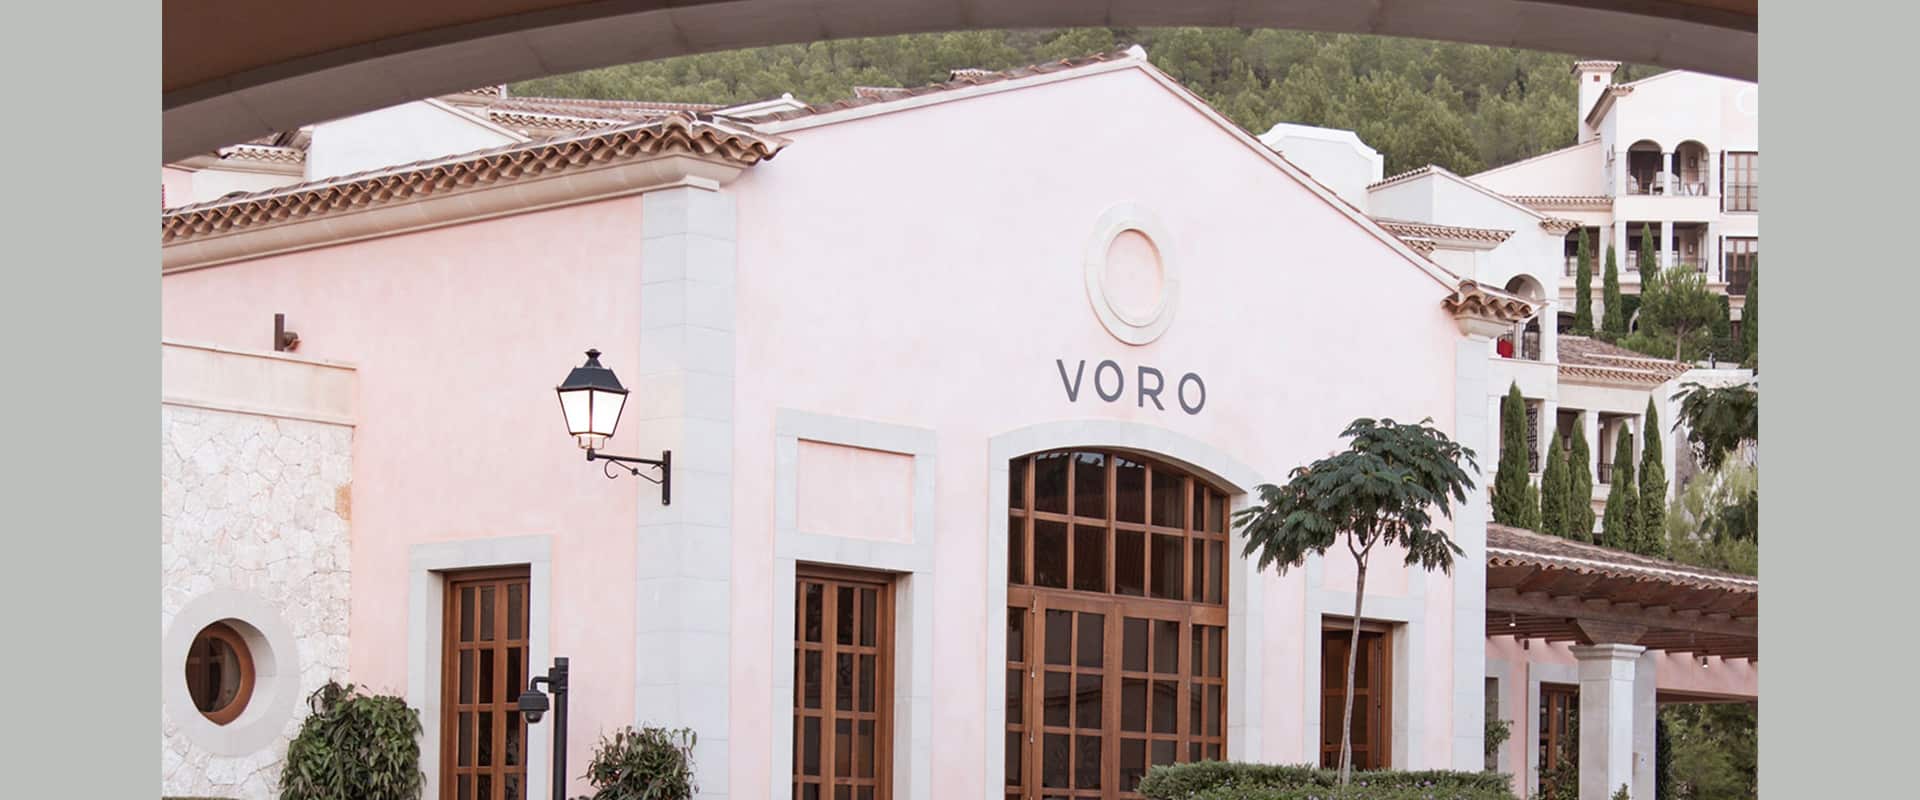 Voro, cuisine with a Mediterranean spirit